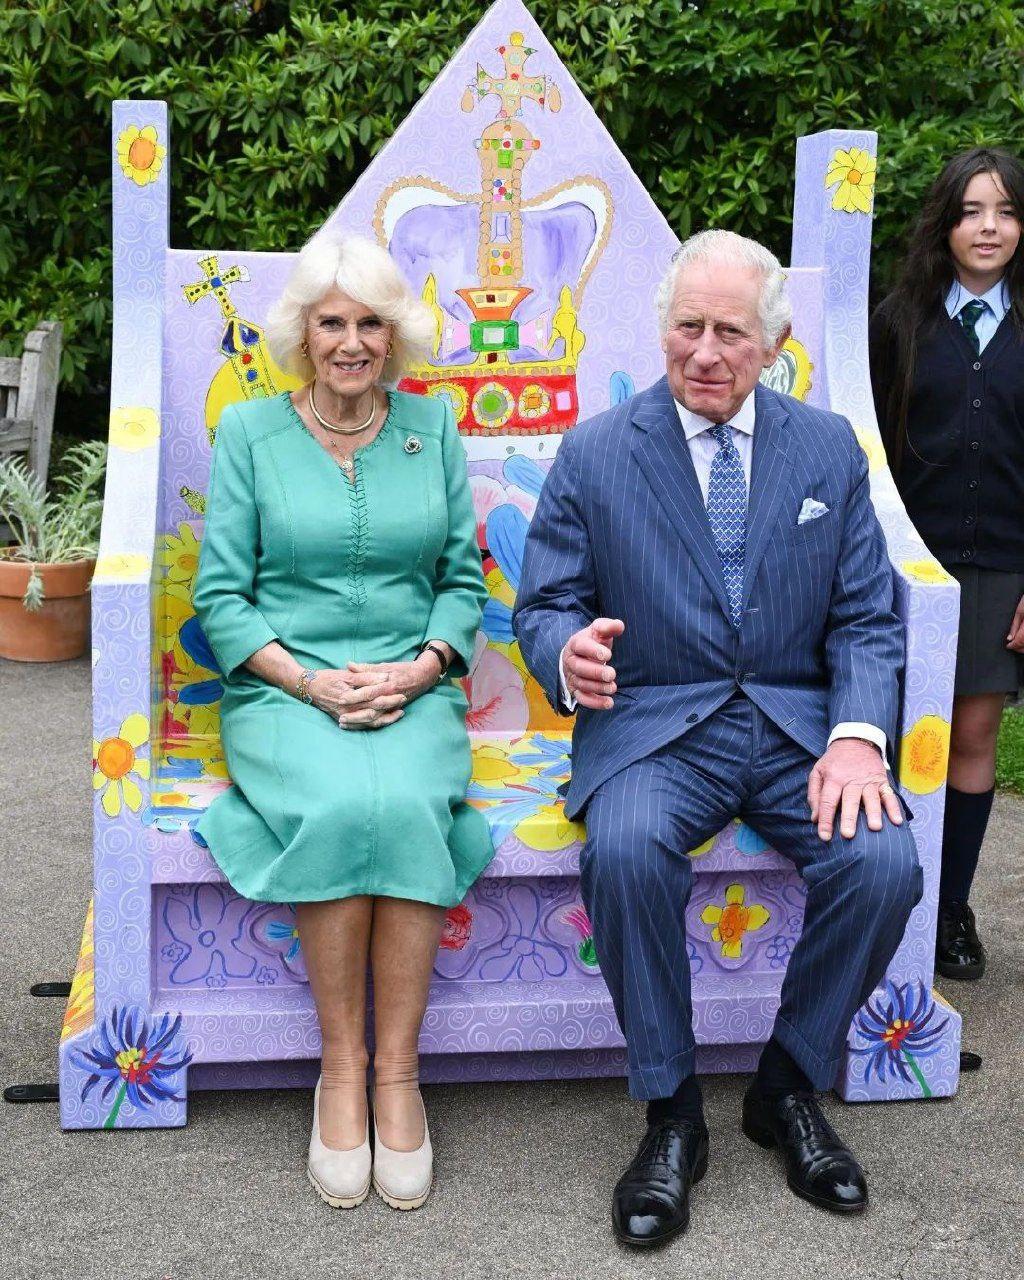 photo 2023 05 24 22 21 21 Король Карл III и королева Камилла: вечеринка с тортом и открытие сада в Северной Ирландии